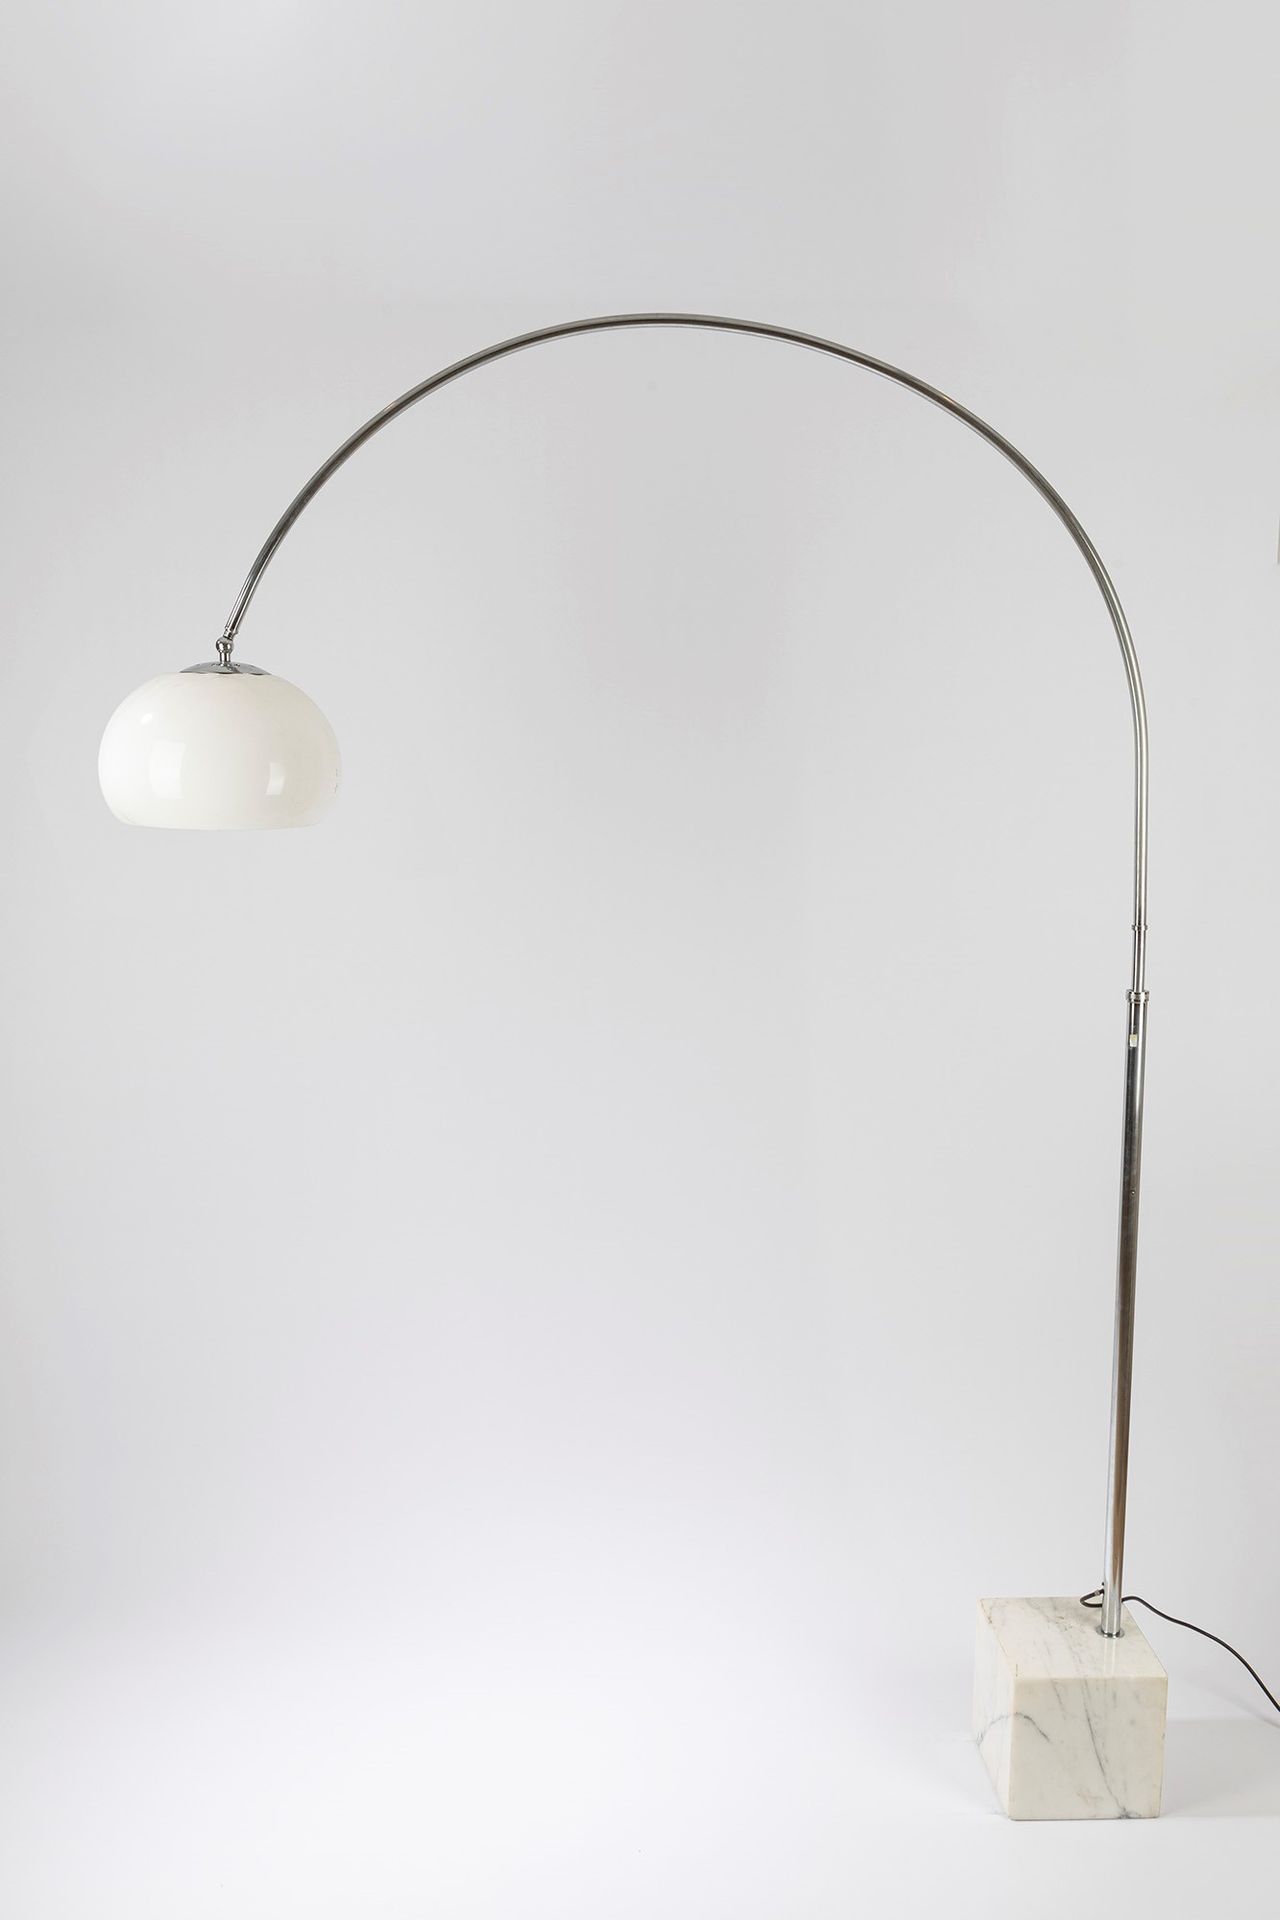 ITALIAN MANUFACTURE Lámpara de pie, época de los años 20

cm 30 x cm 150 x 205 H&hellip;